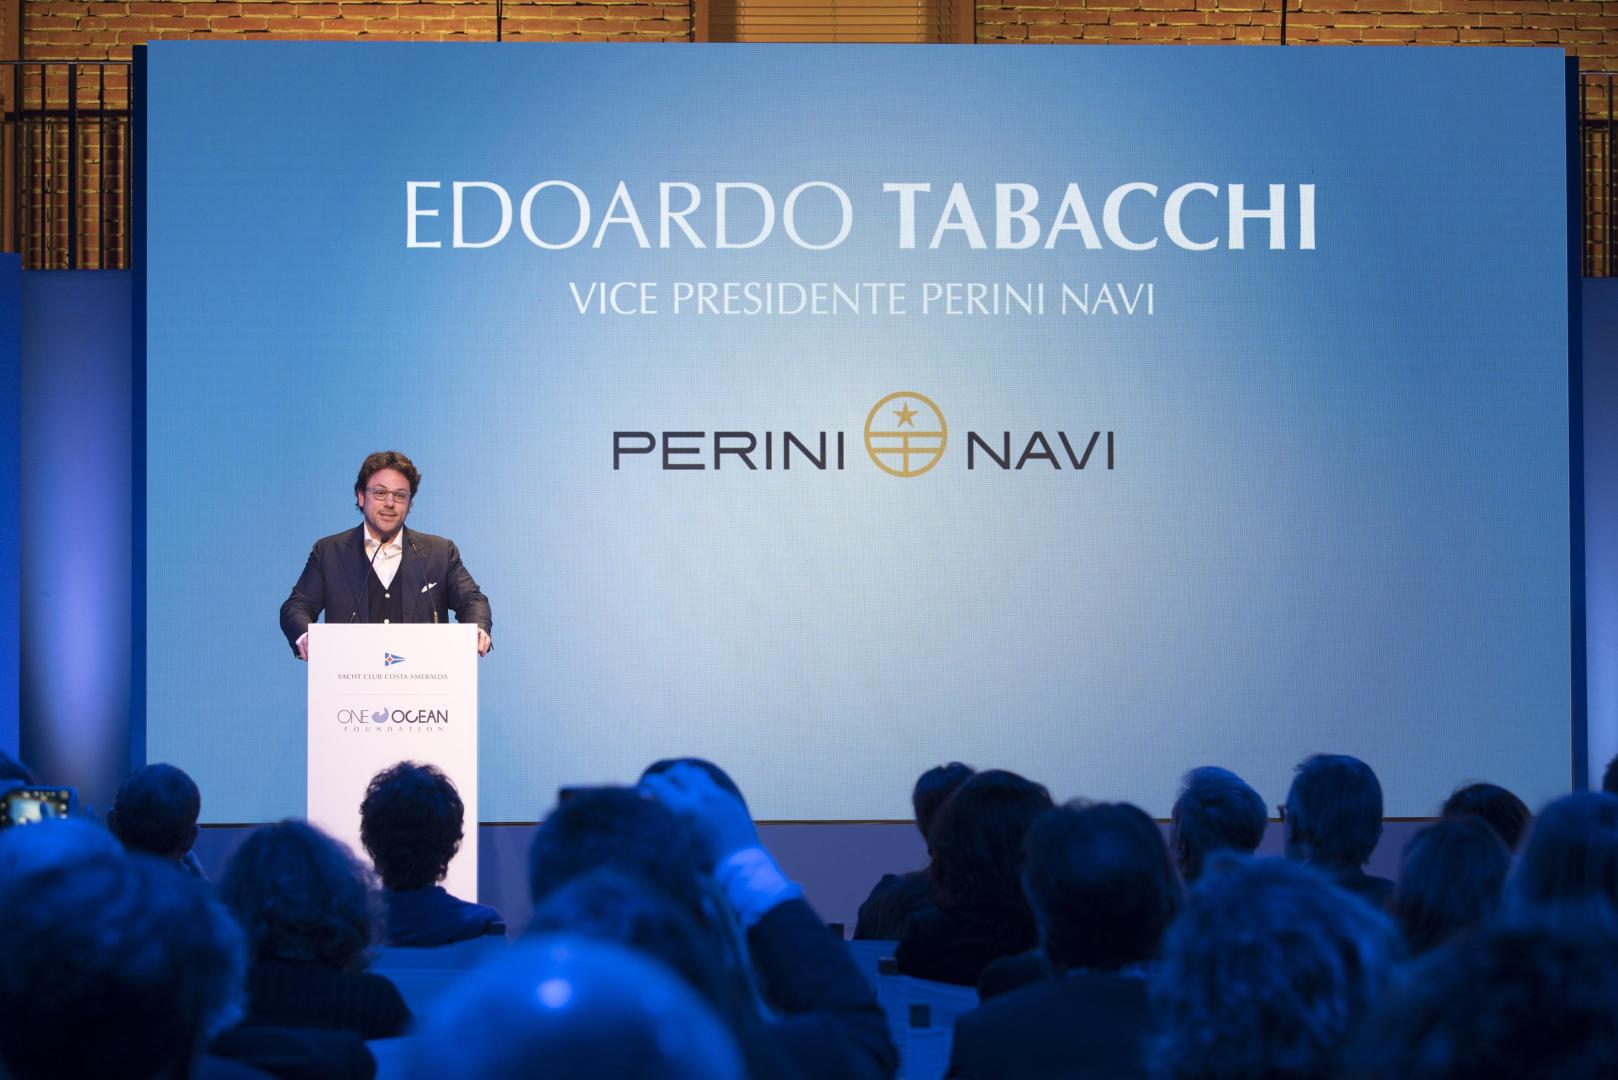 Edoardo Tabacchi, Vice Presidente di Perini Navi